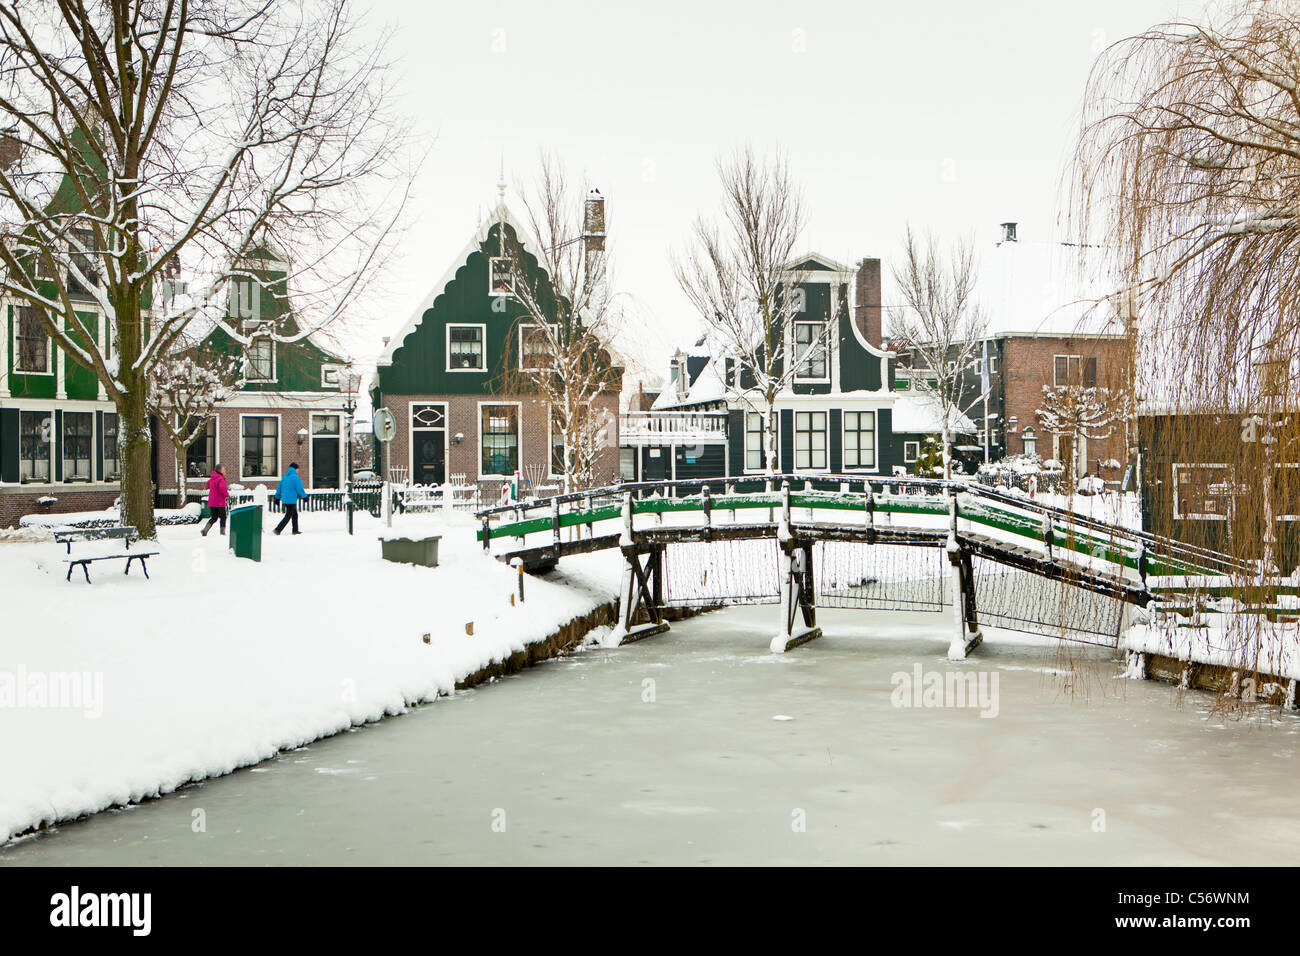 Zaanse Schans, villaggio sulle rive del fiume Zaan con verde caratteristiche case di legno. Inverno, la neve. Foto Stock